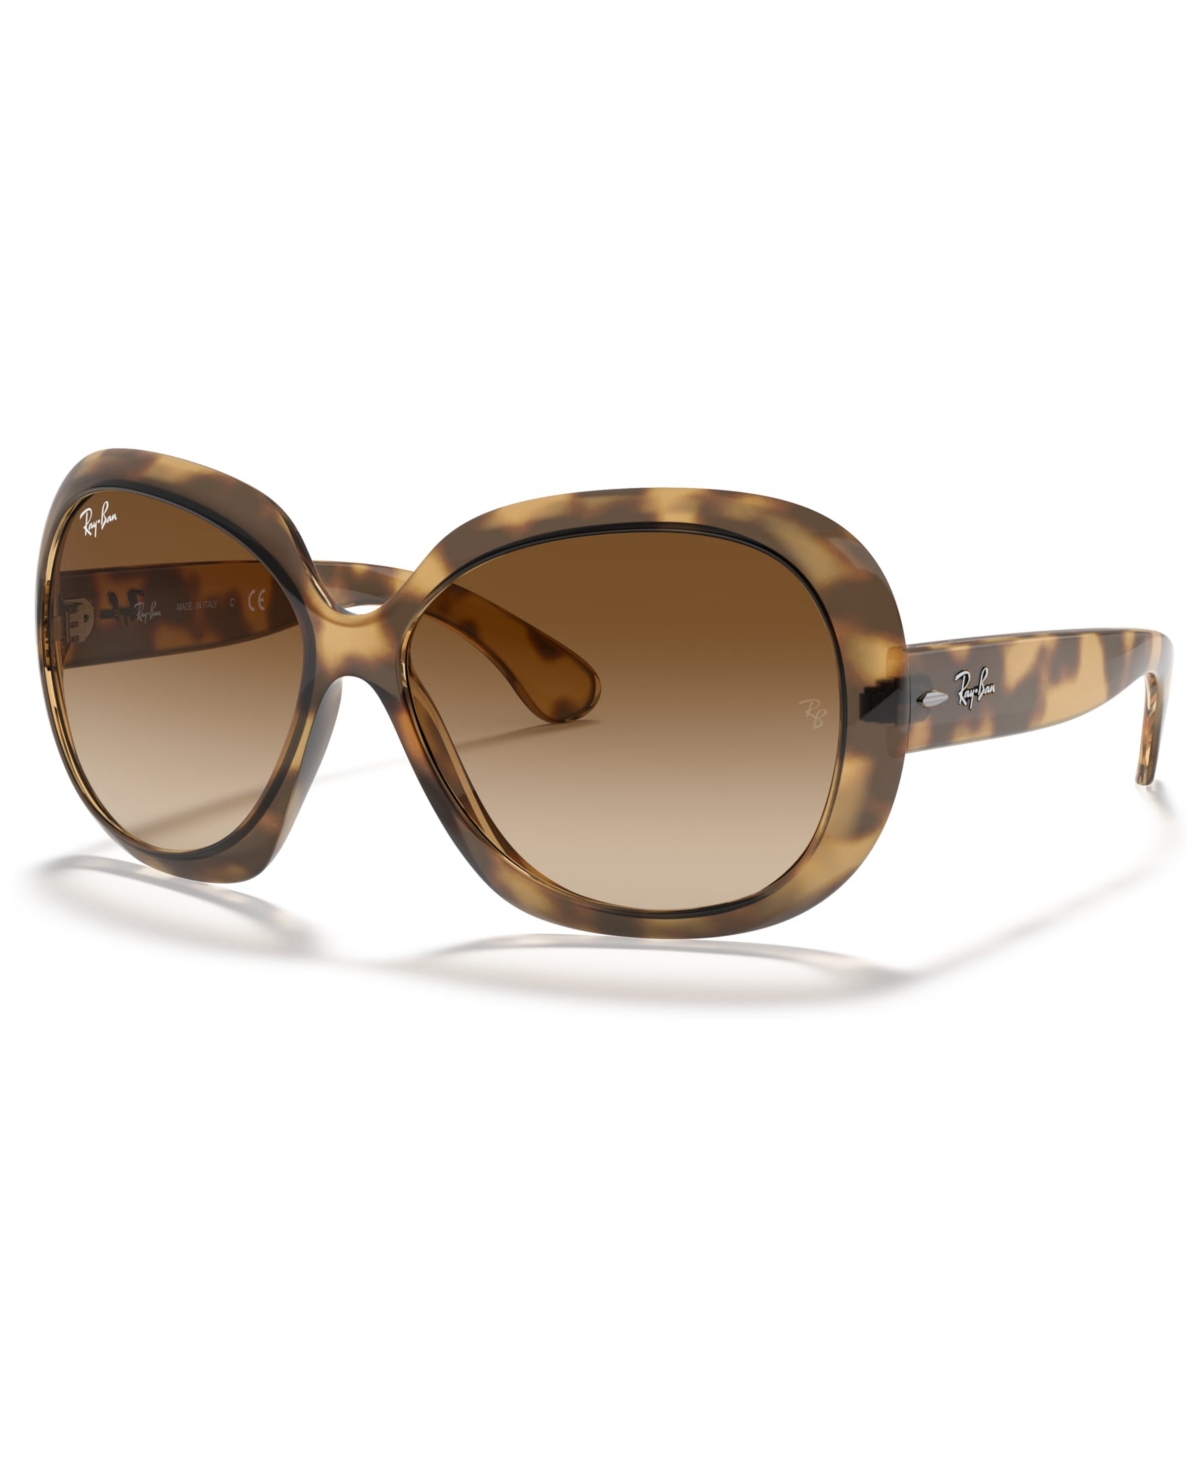 Sunglasses, RB4098 Jackie Ohh Ii - Havana